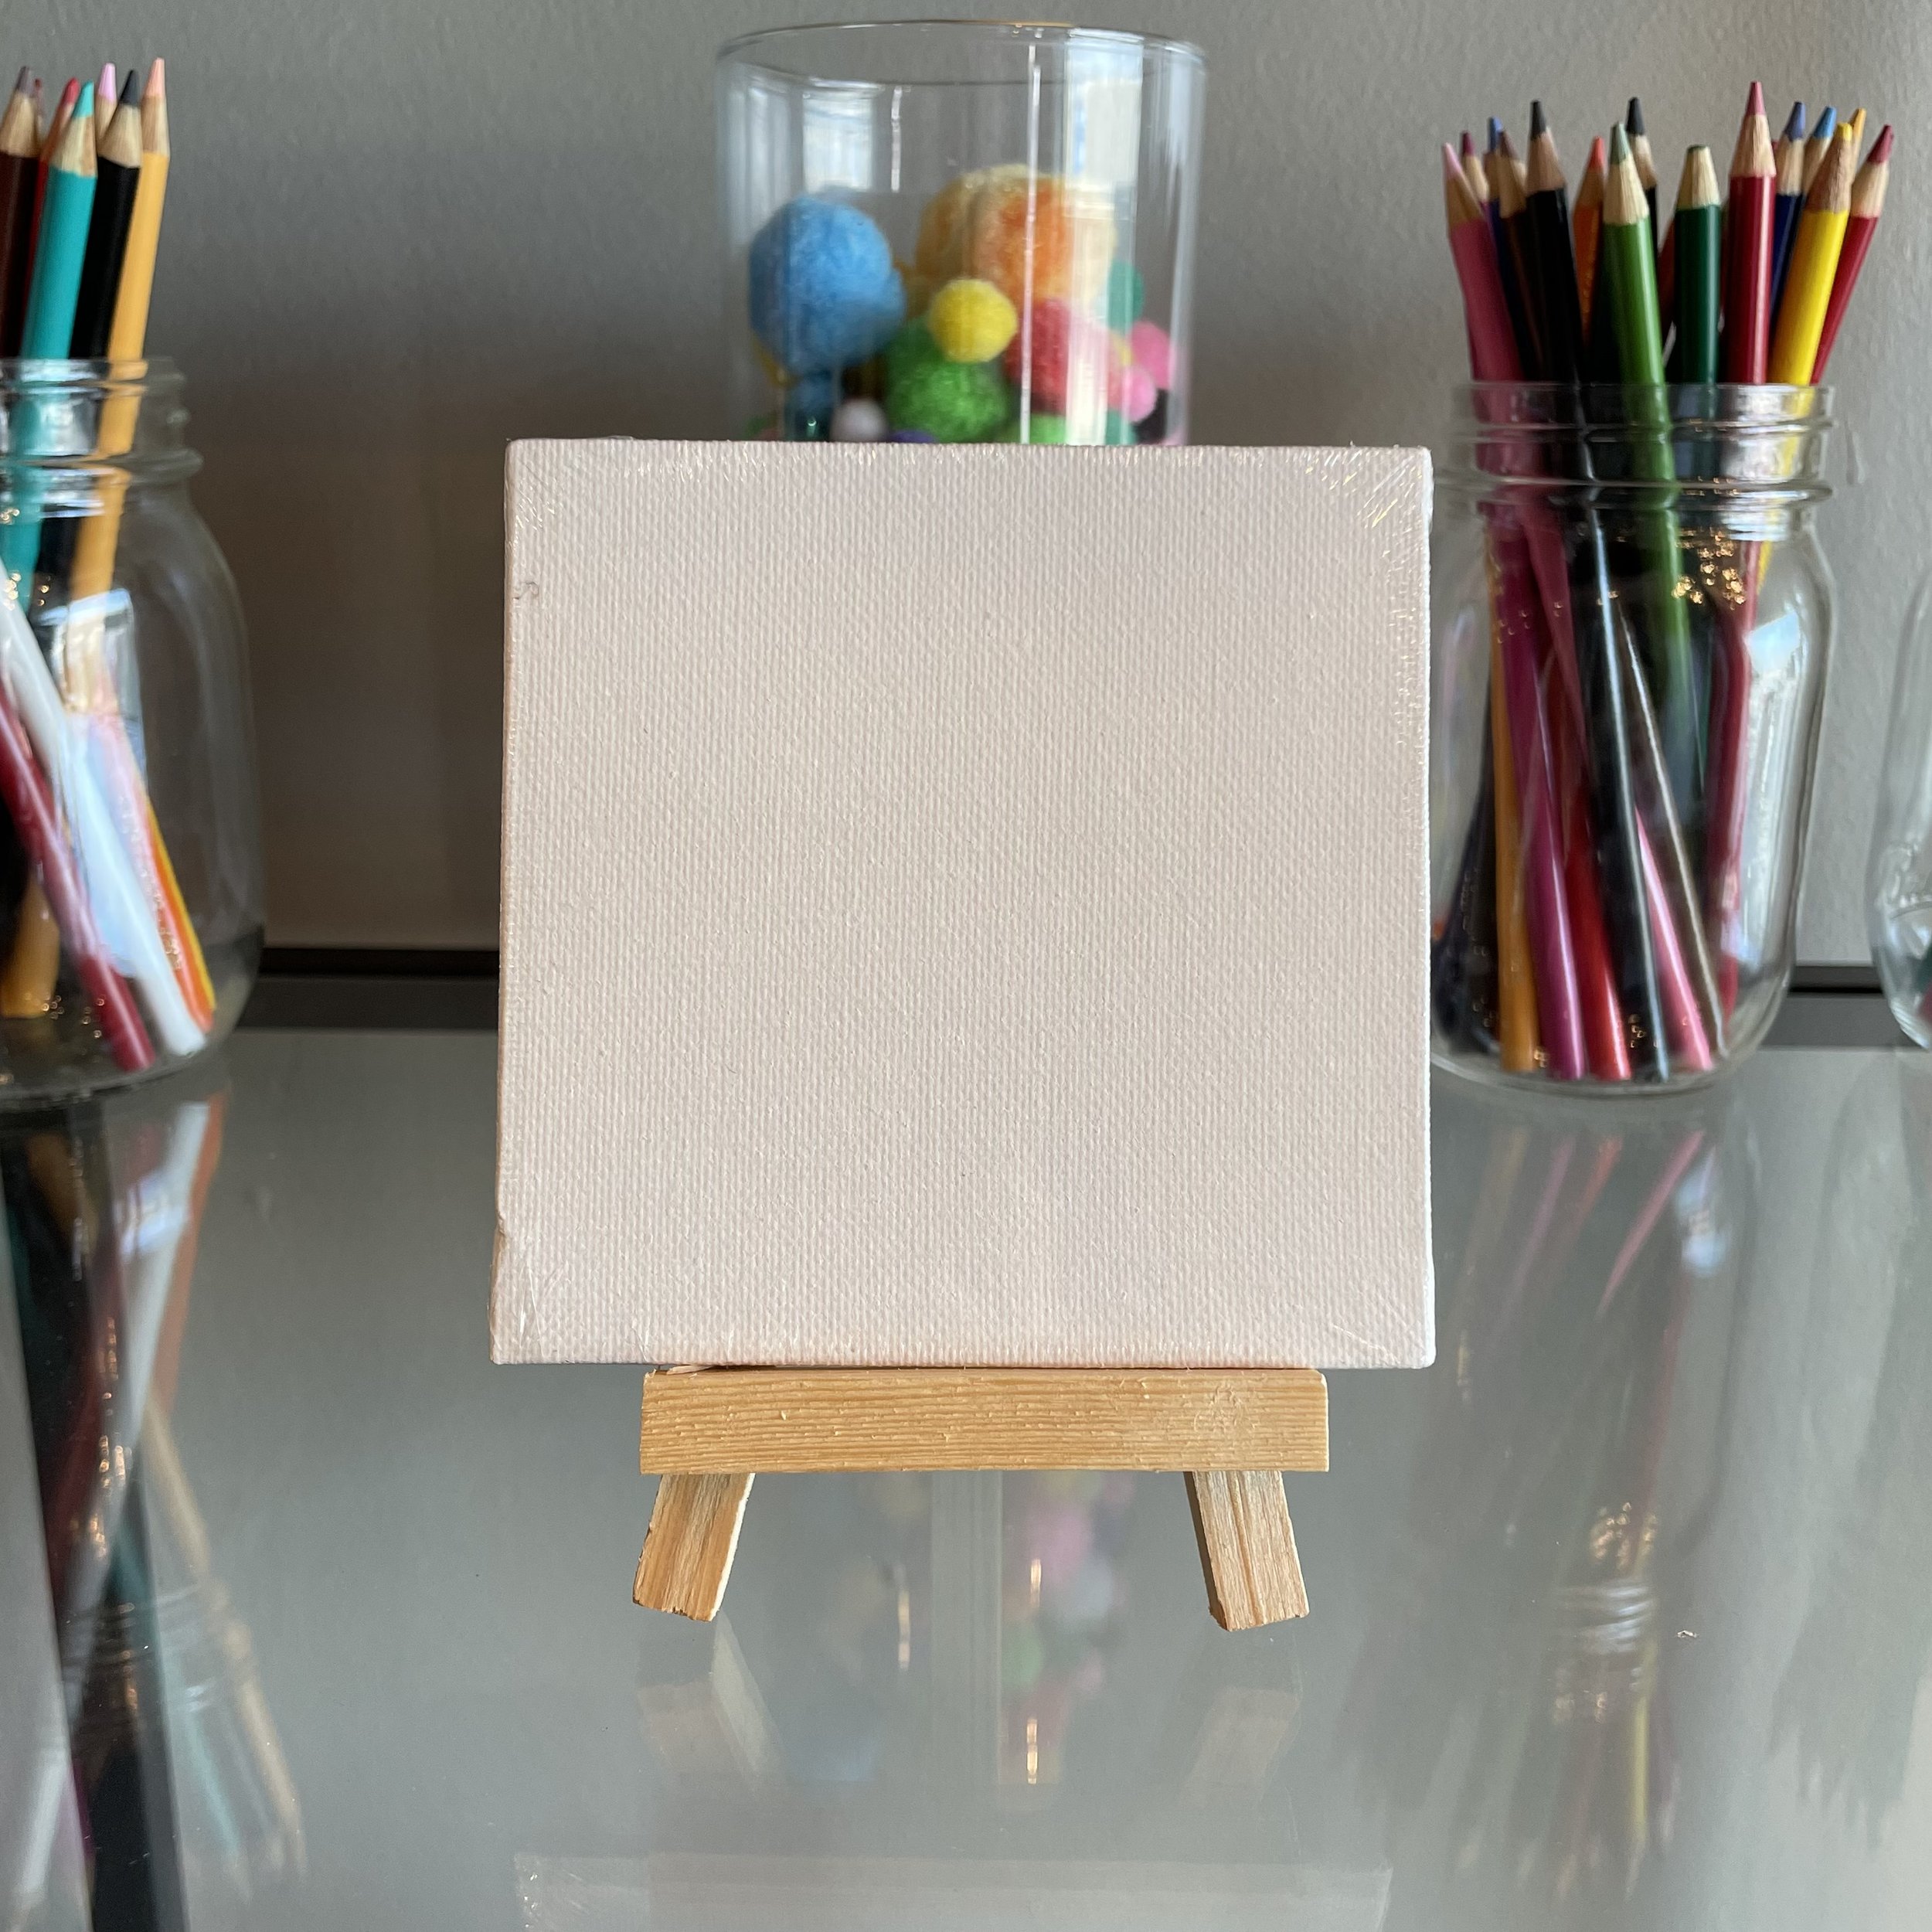 4x4’’ Canvas + Easel Set ($5) — Let’s Art About It